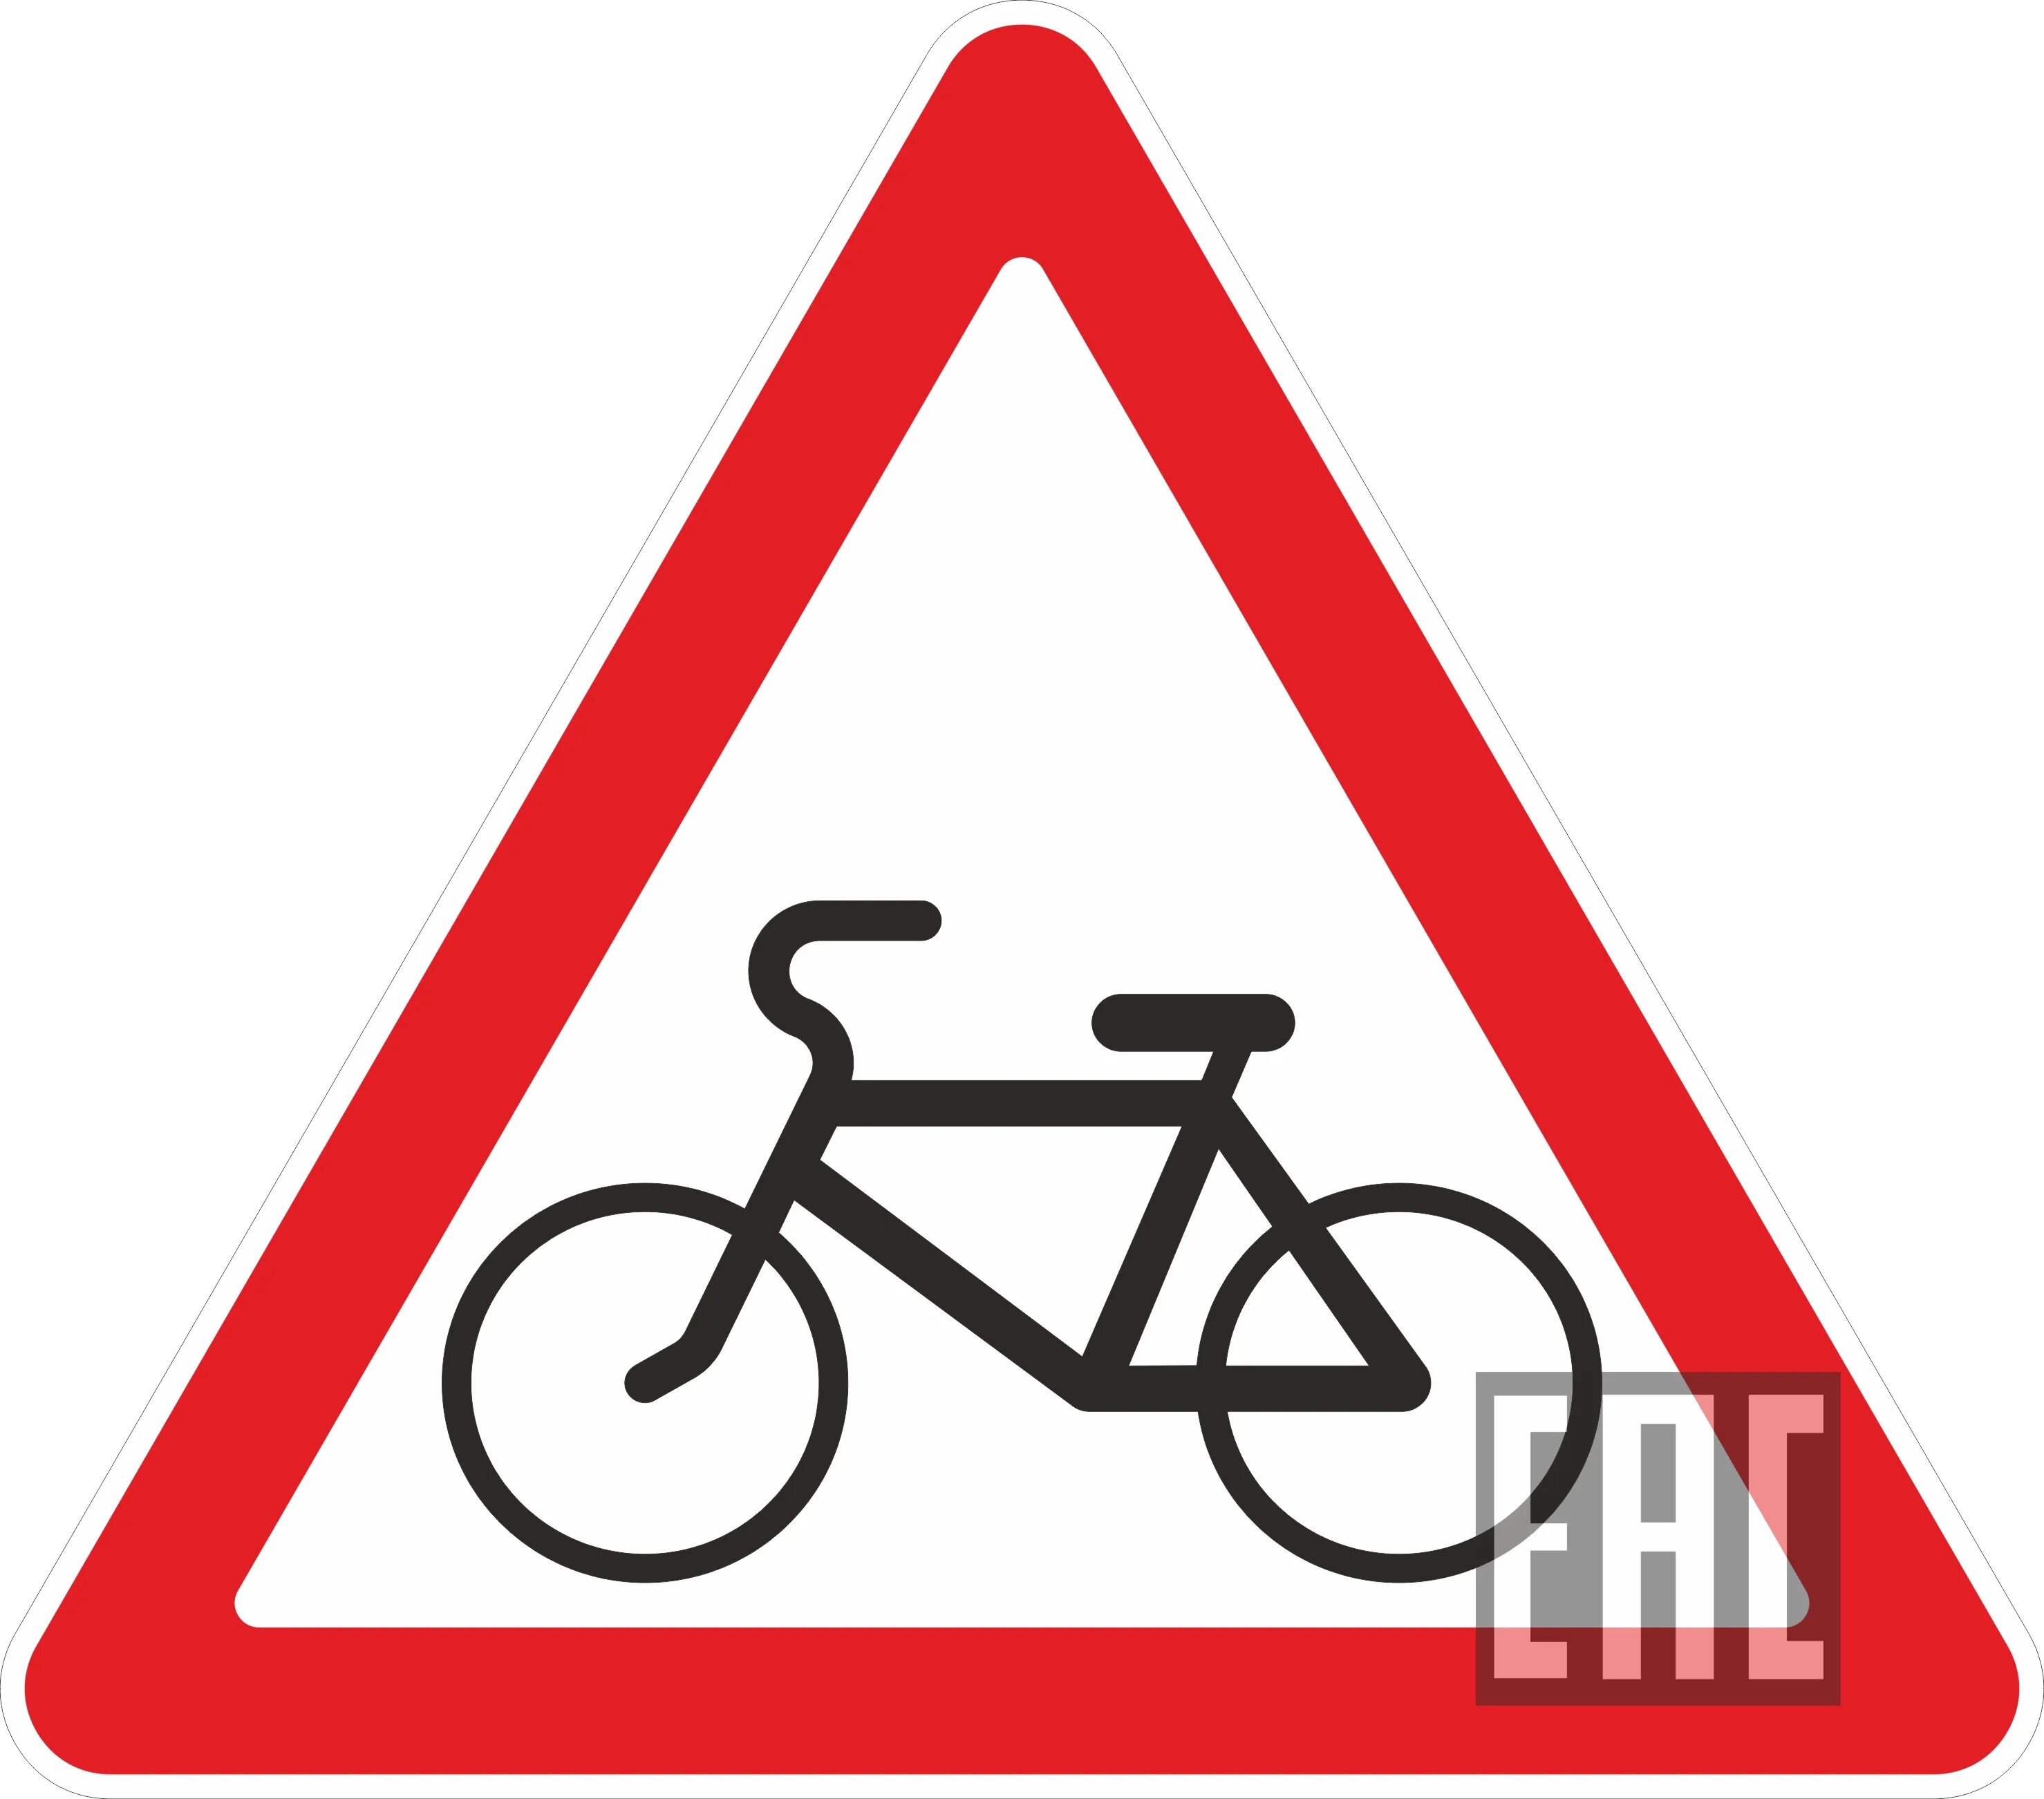 55 5 1 24. 1.24 Пересечение с велосипедной дорожкой. Дорожный знак 1.24.1. Велосипедная дорожка дорожный знак. Треугольные дорожные знаки.